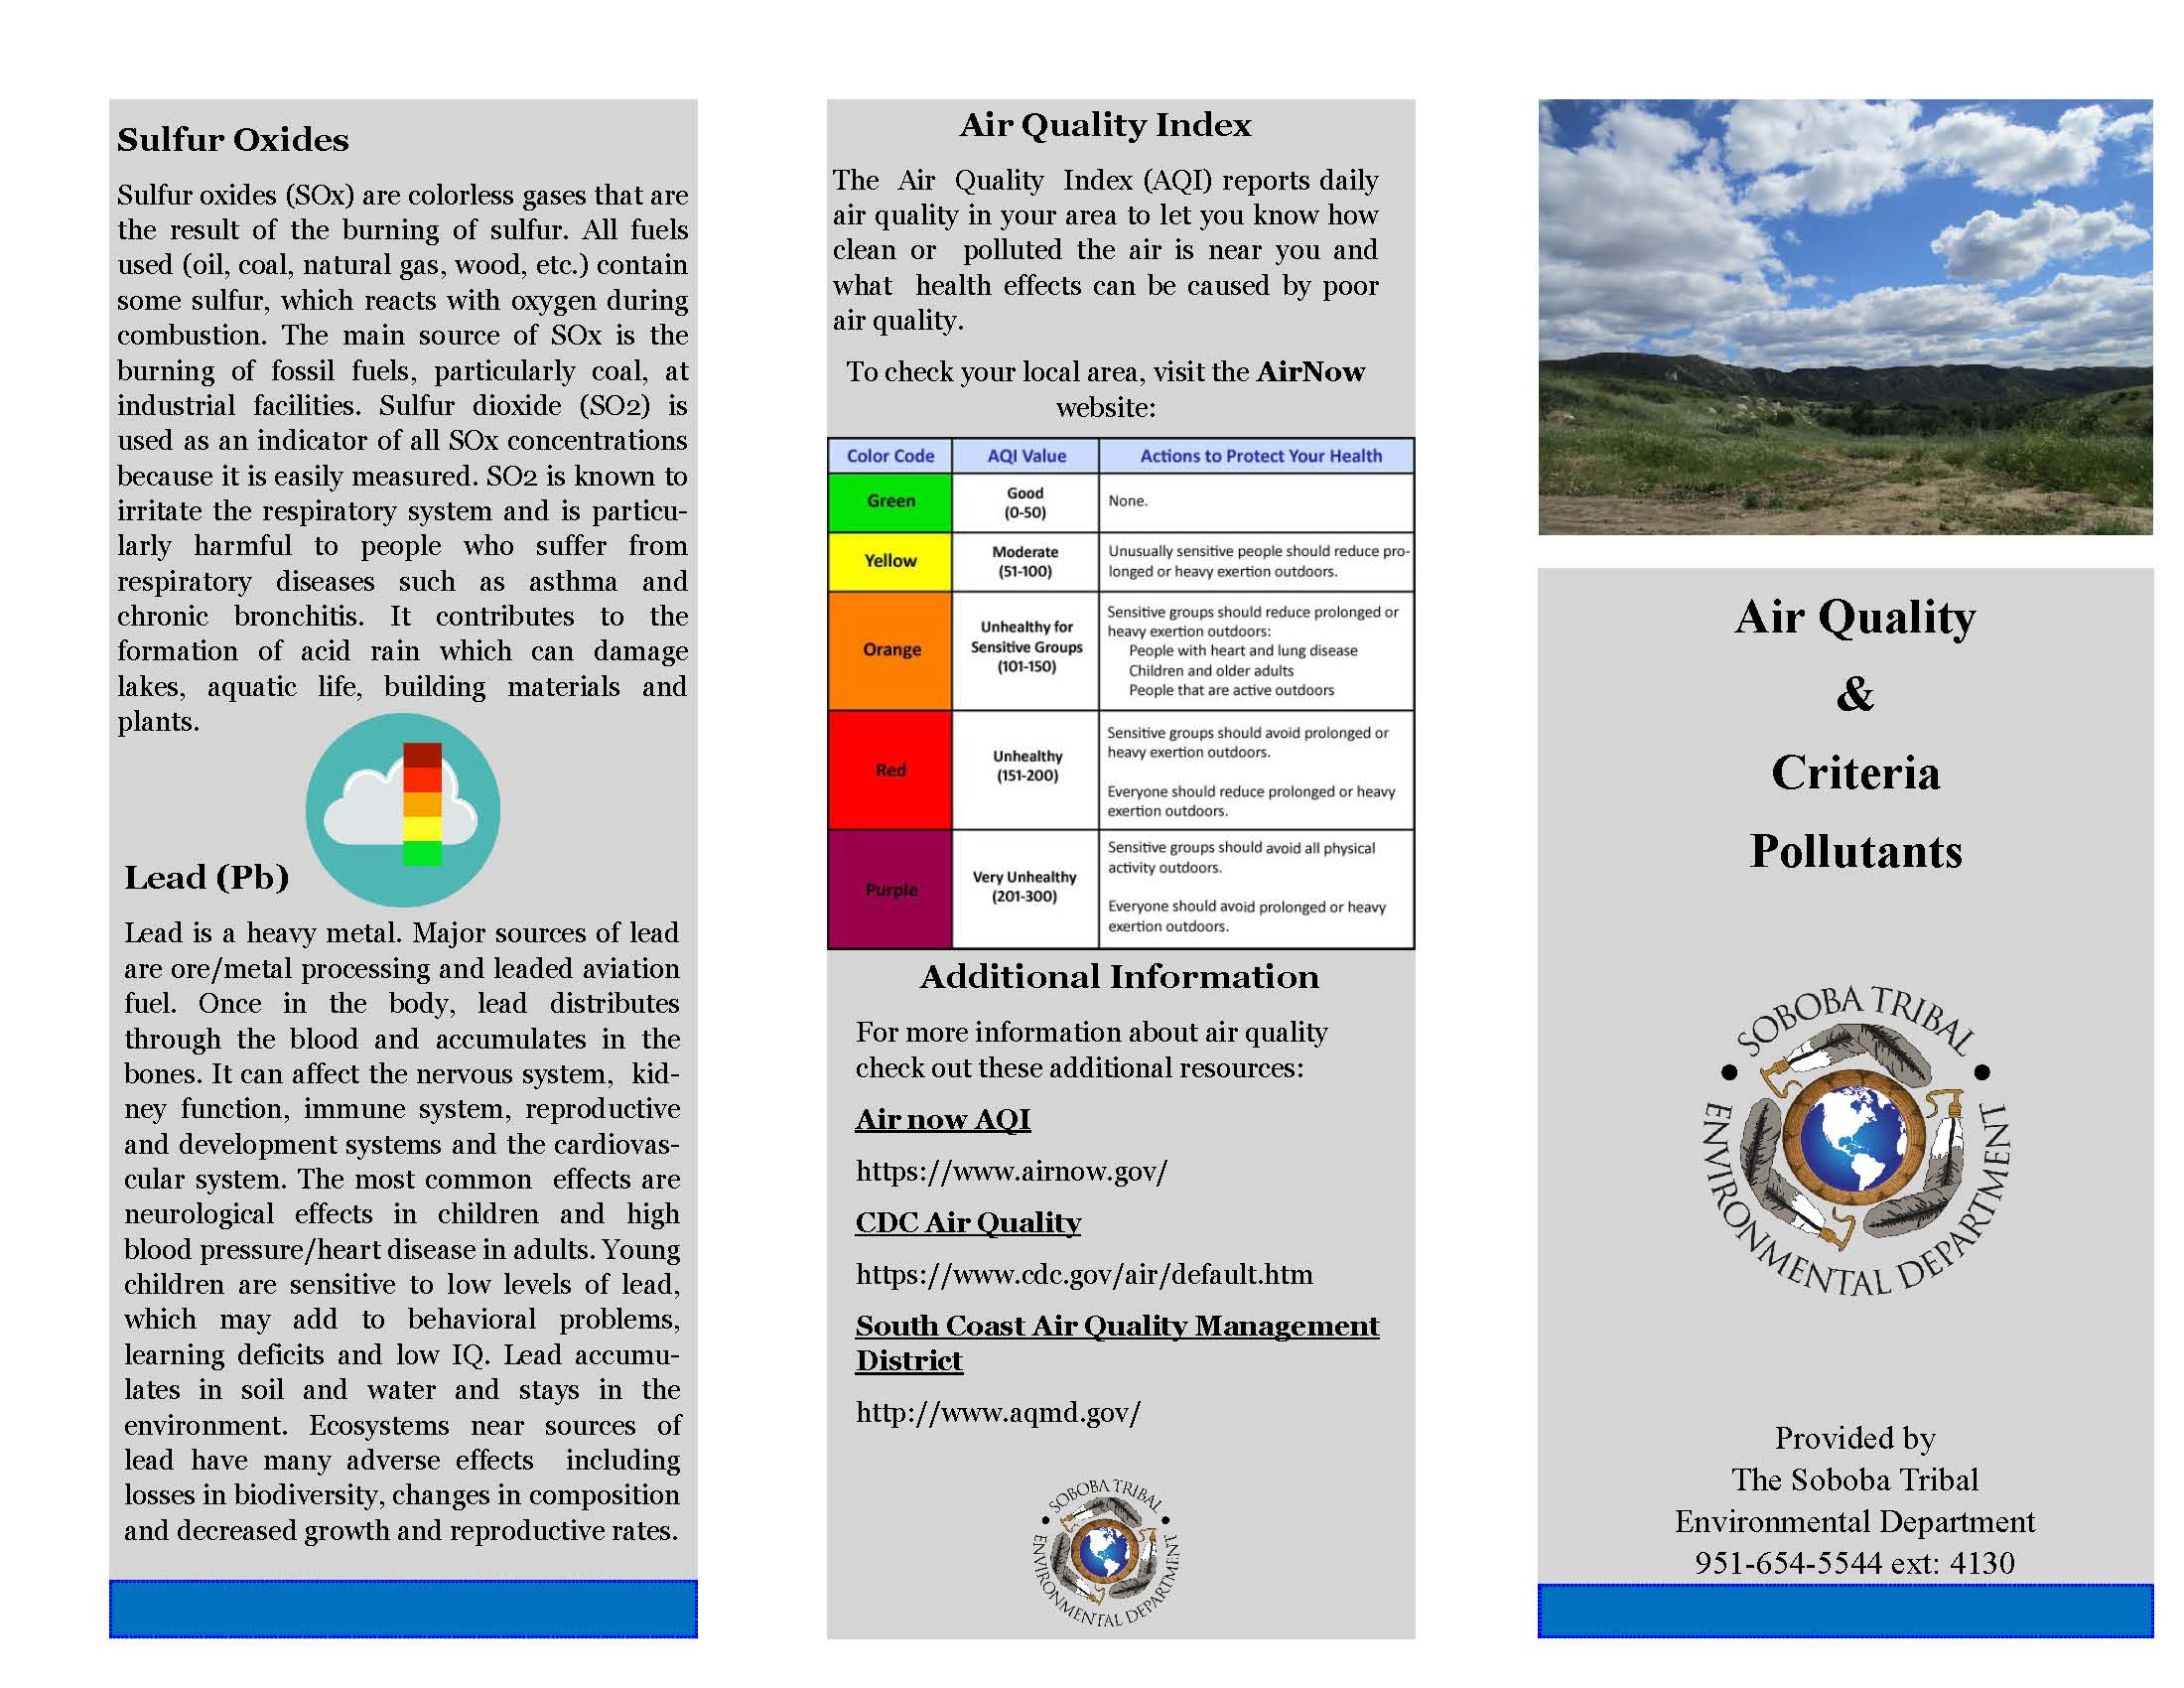 Air Quality & Criteria Pollutants